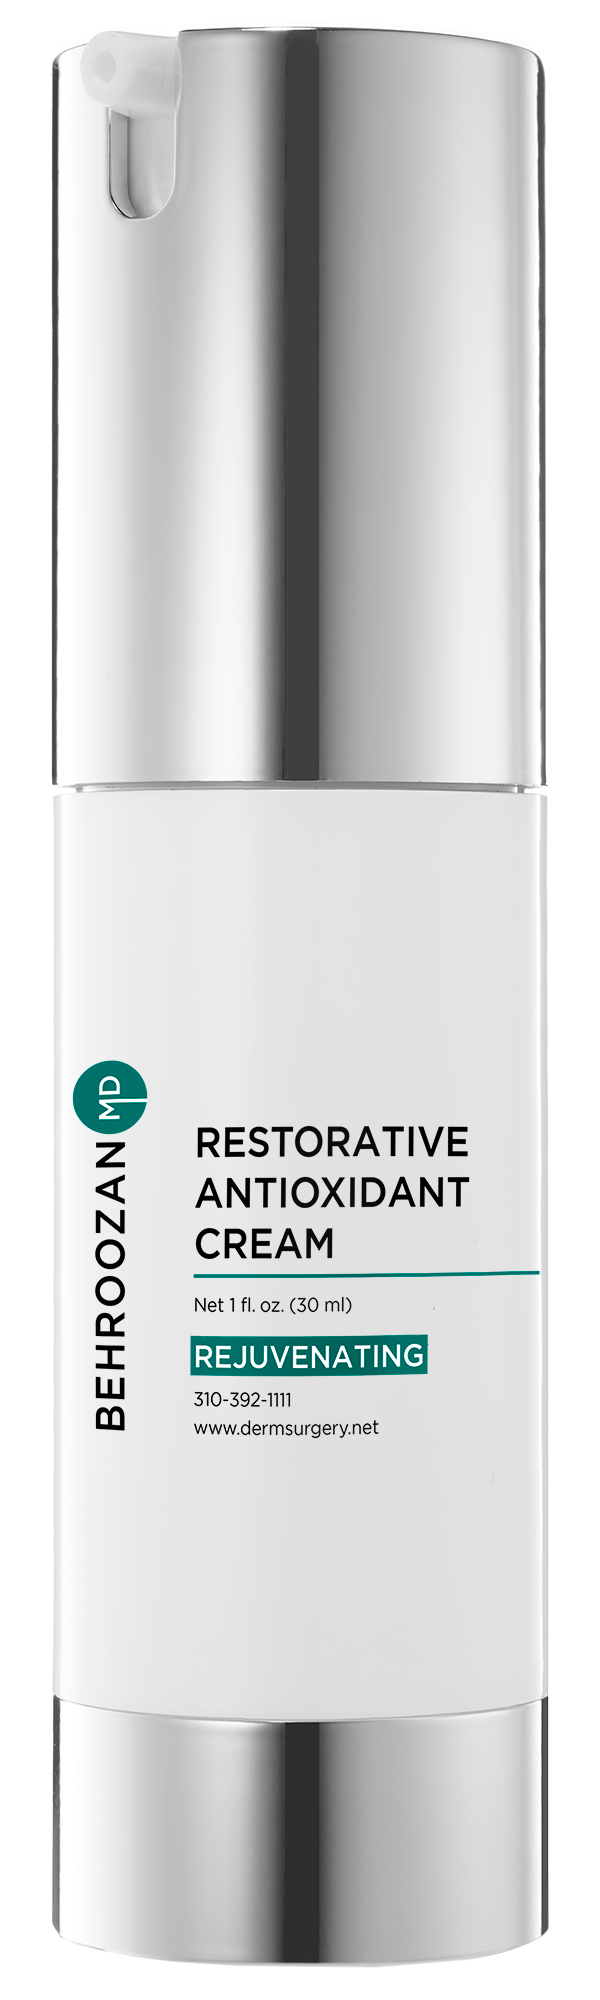 Restorative Antioxidant Cream